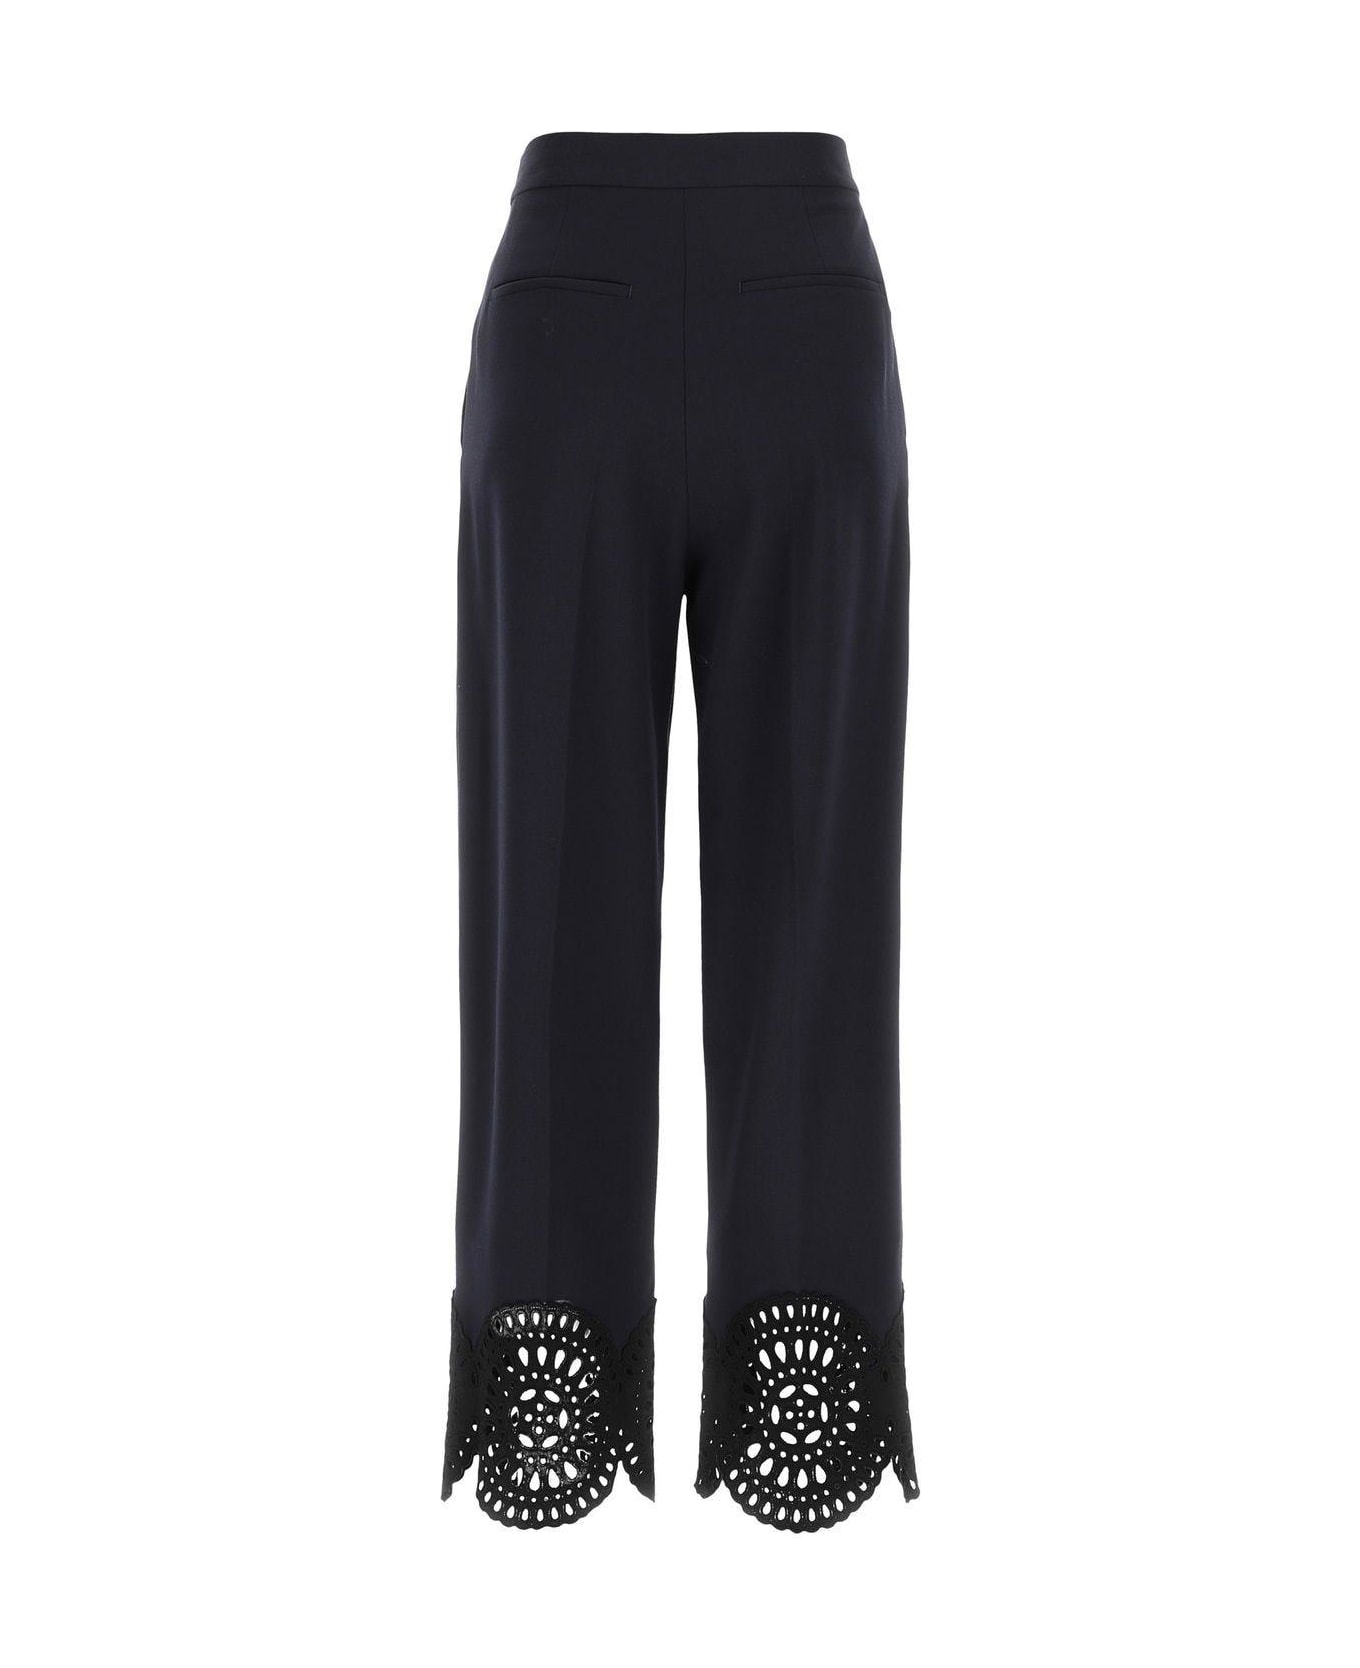 Stella McCartney Navy Blue Stretch Polyester Blend Pant - BLACK